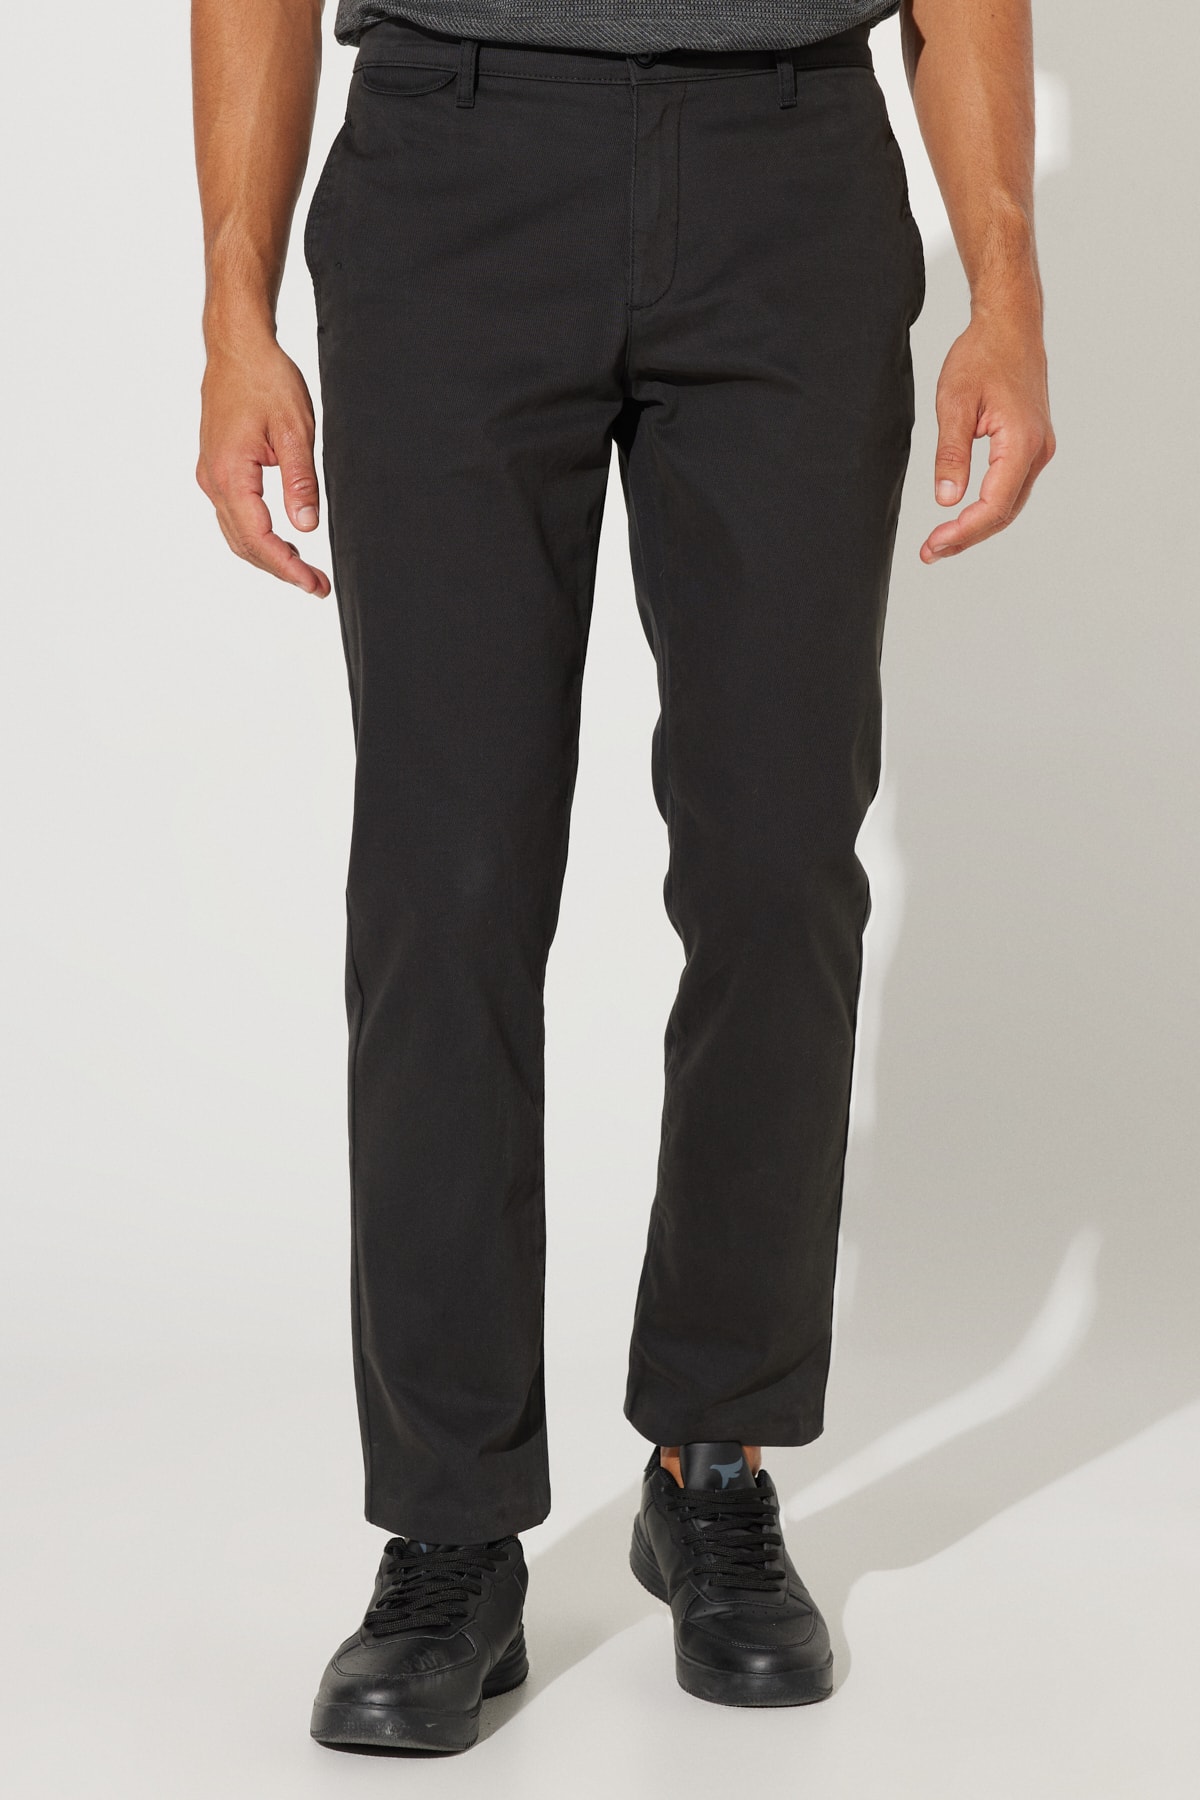 Levně ALTINYILDIZ CLASSICS Men's Black Comfort Fit Comfortable Cut, Cotton Diagonal Patterned Flexible Trousers.